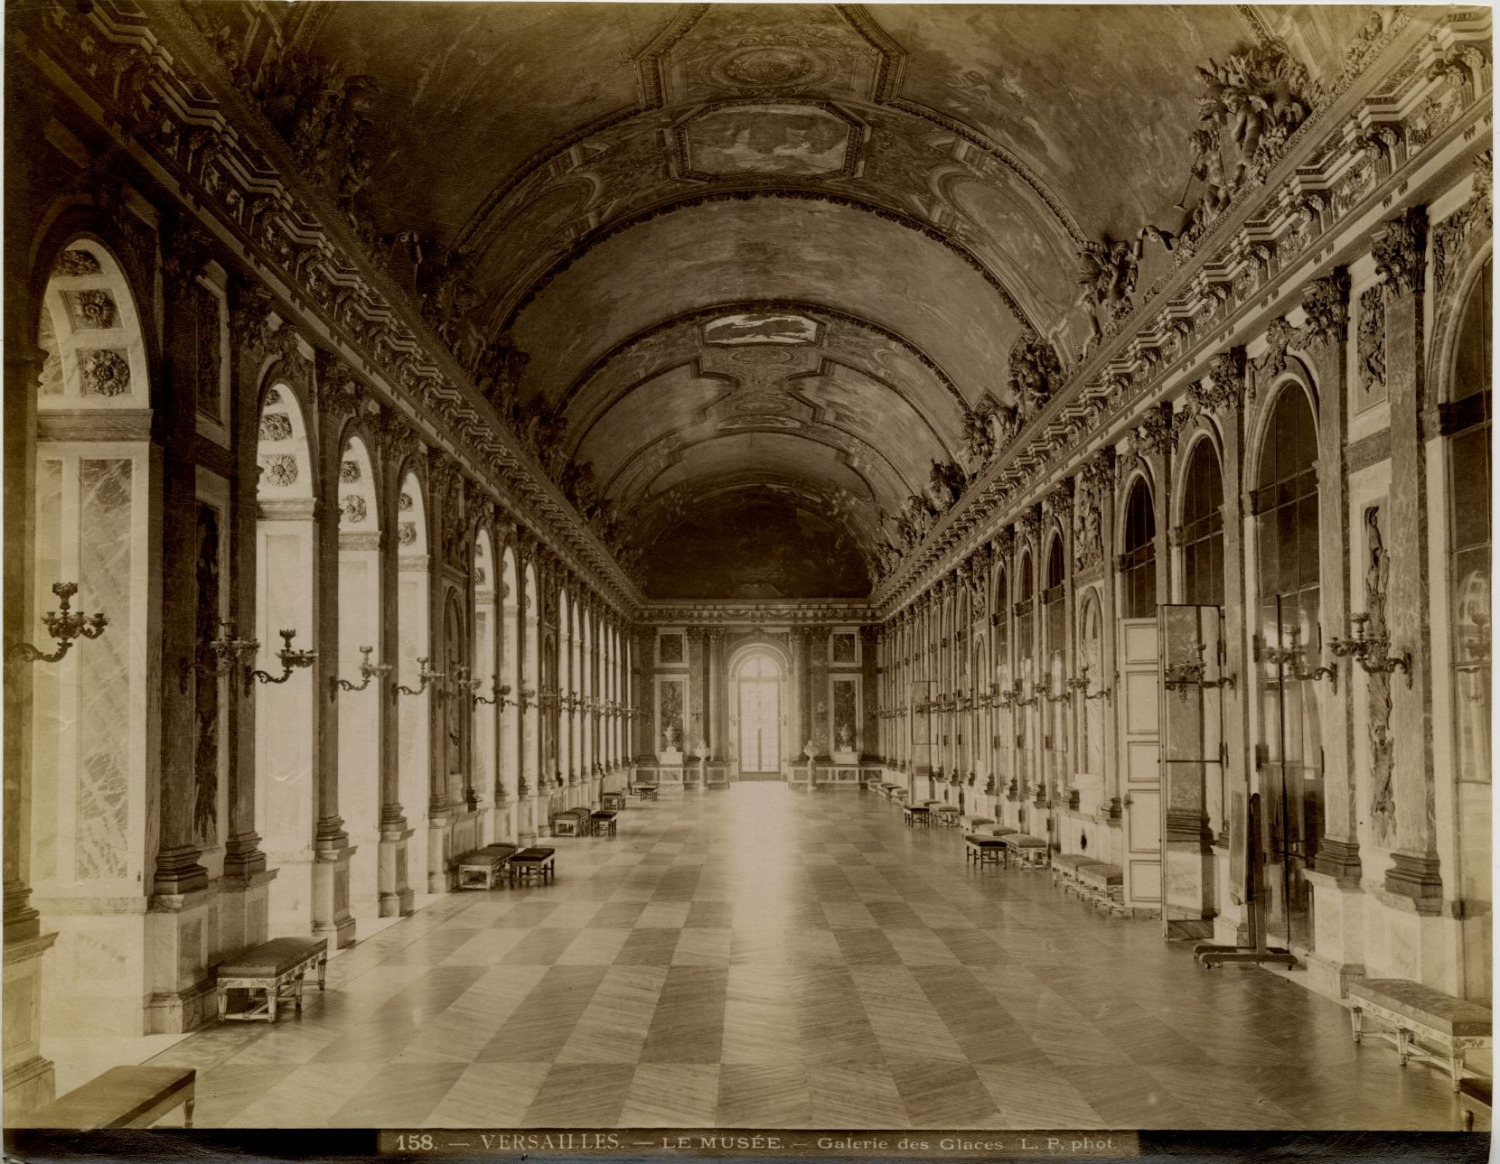 L.P. France, Versailles, the museum, Galerie des Glaces vintage albumen print, Fr